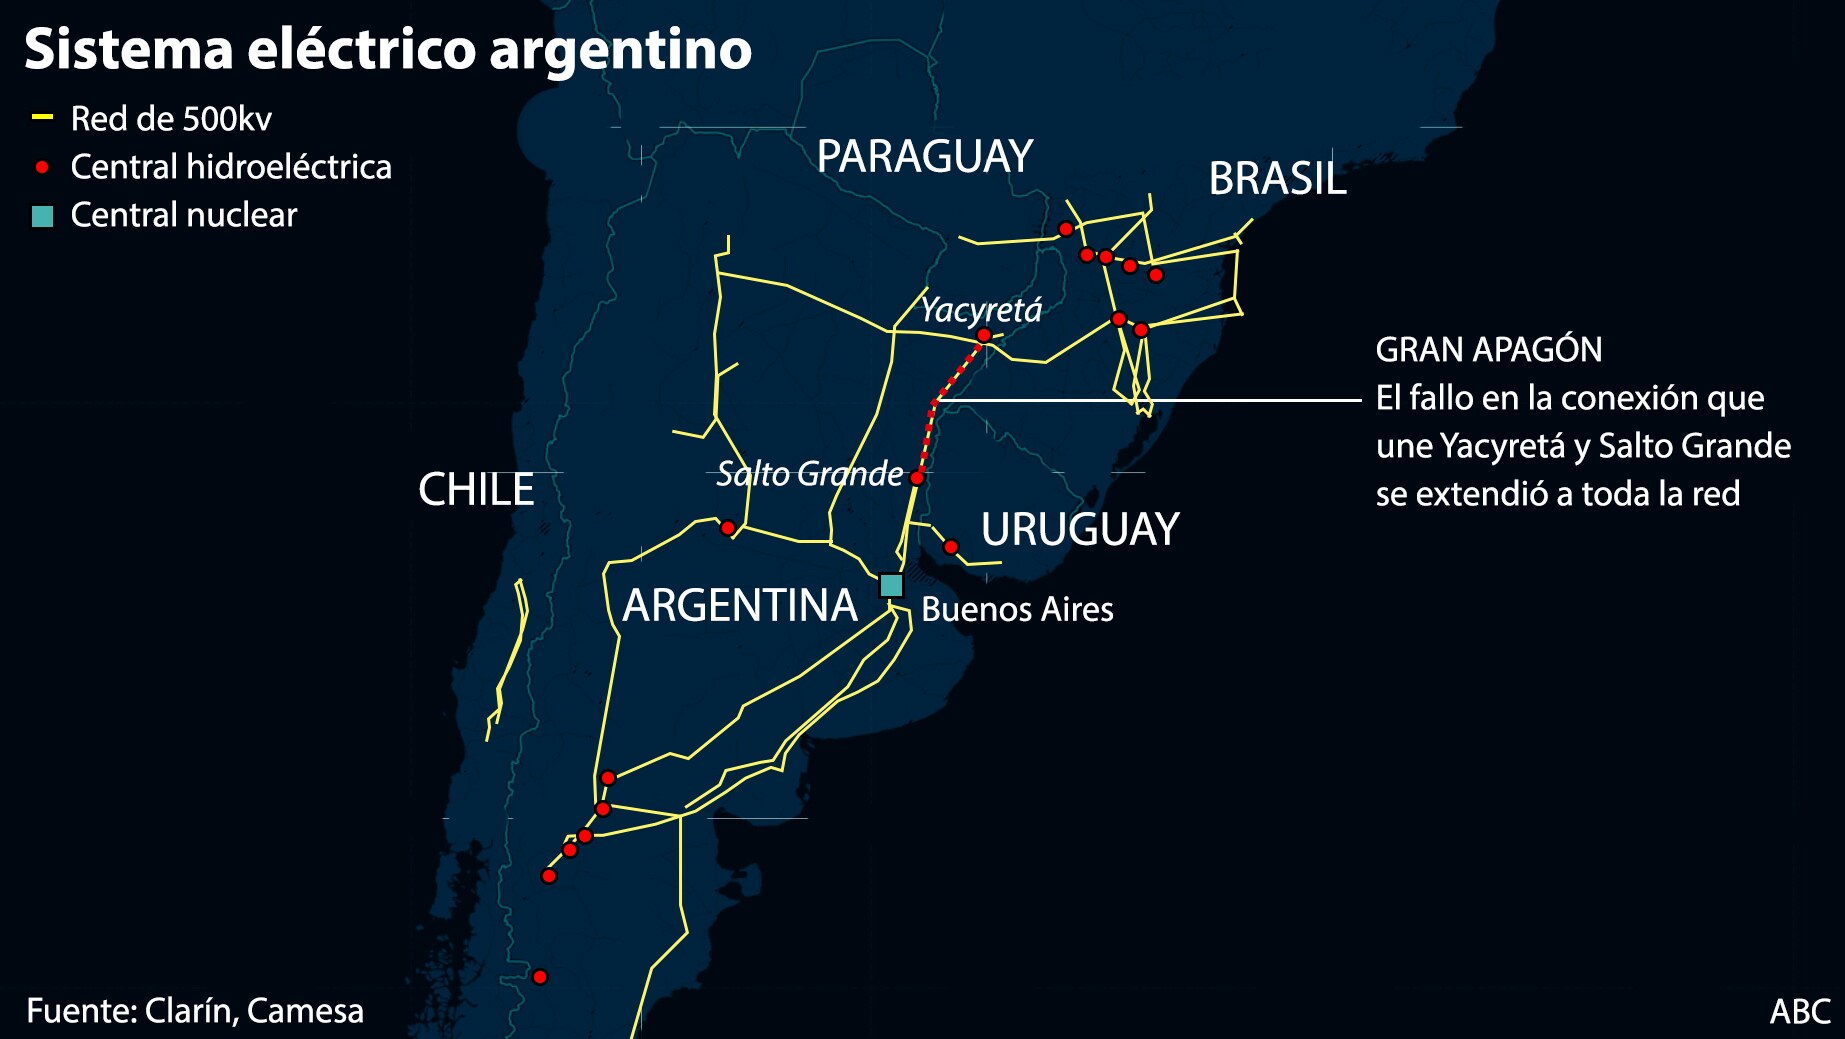 Argentina recupera la electricidad tras sufrir un histórico apagón en día electoral